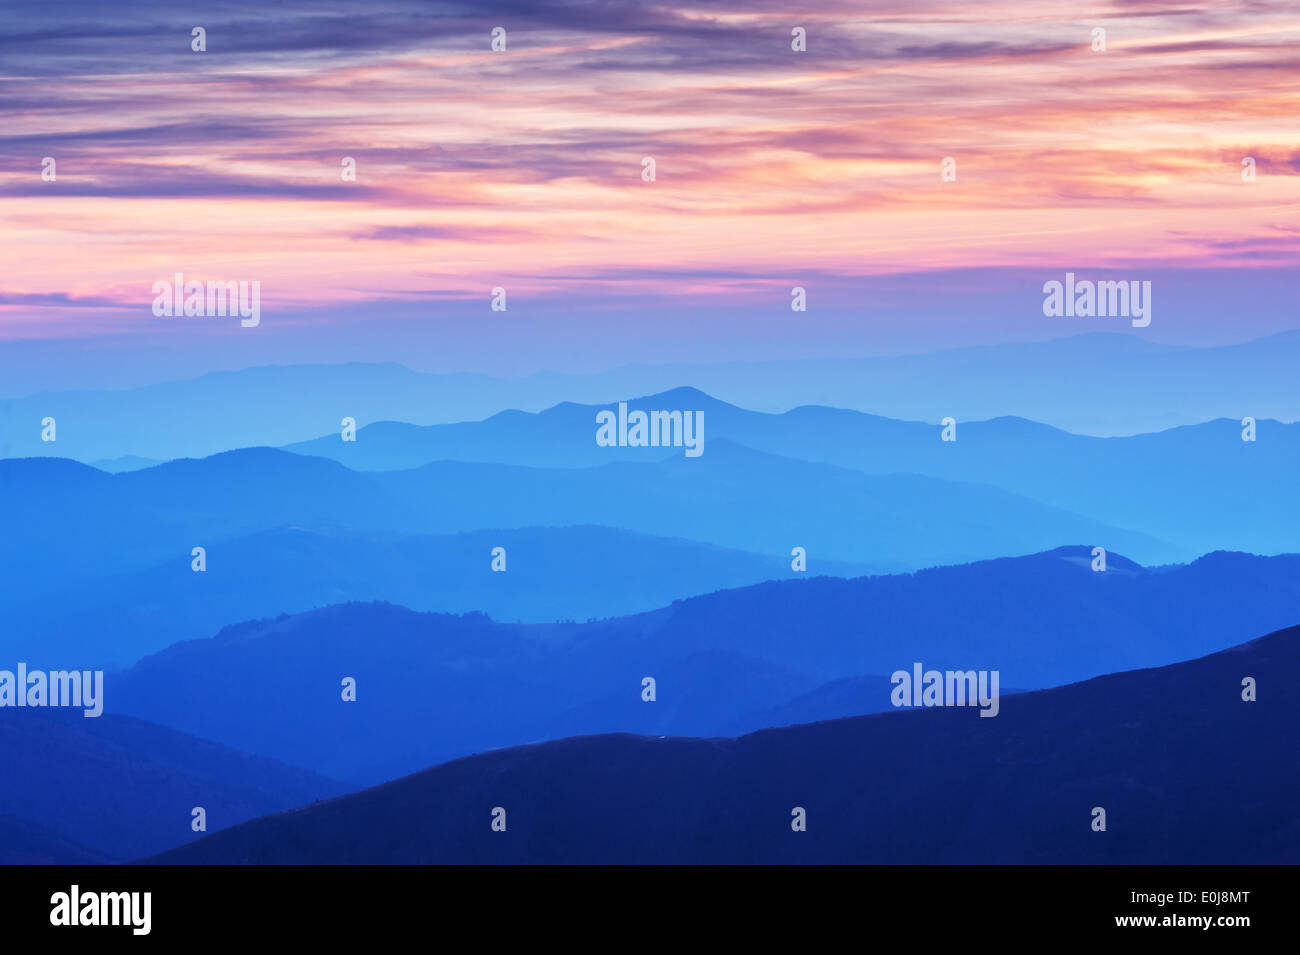 beauty blue sunset on mountain Stock Photo